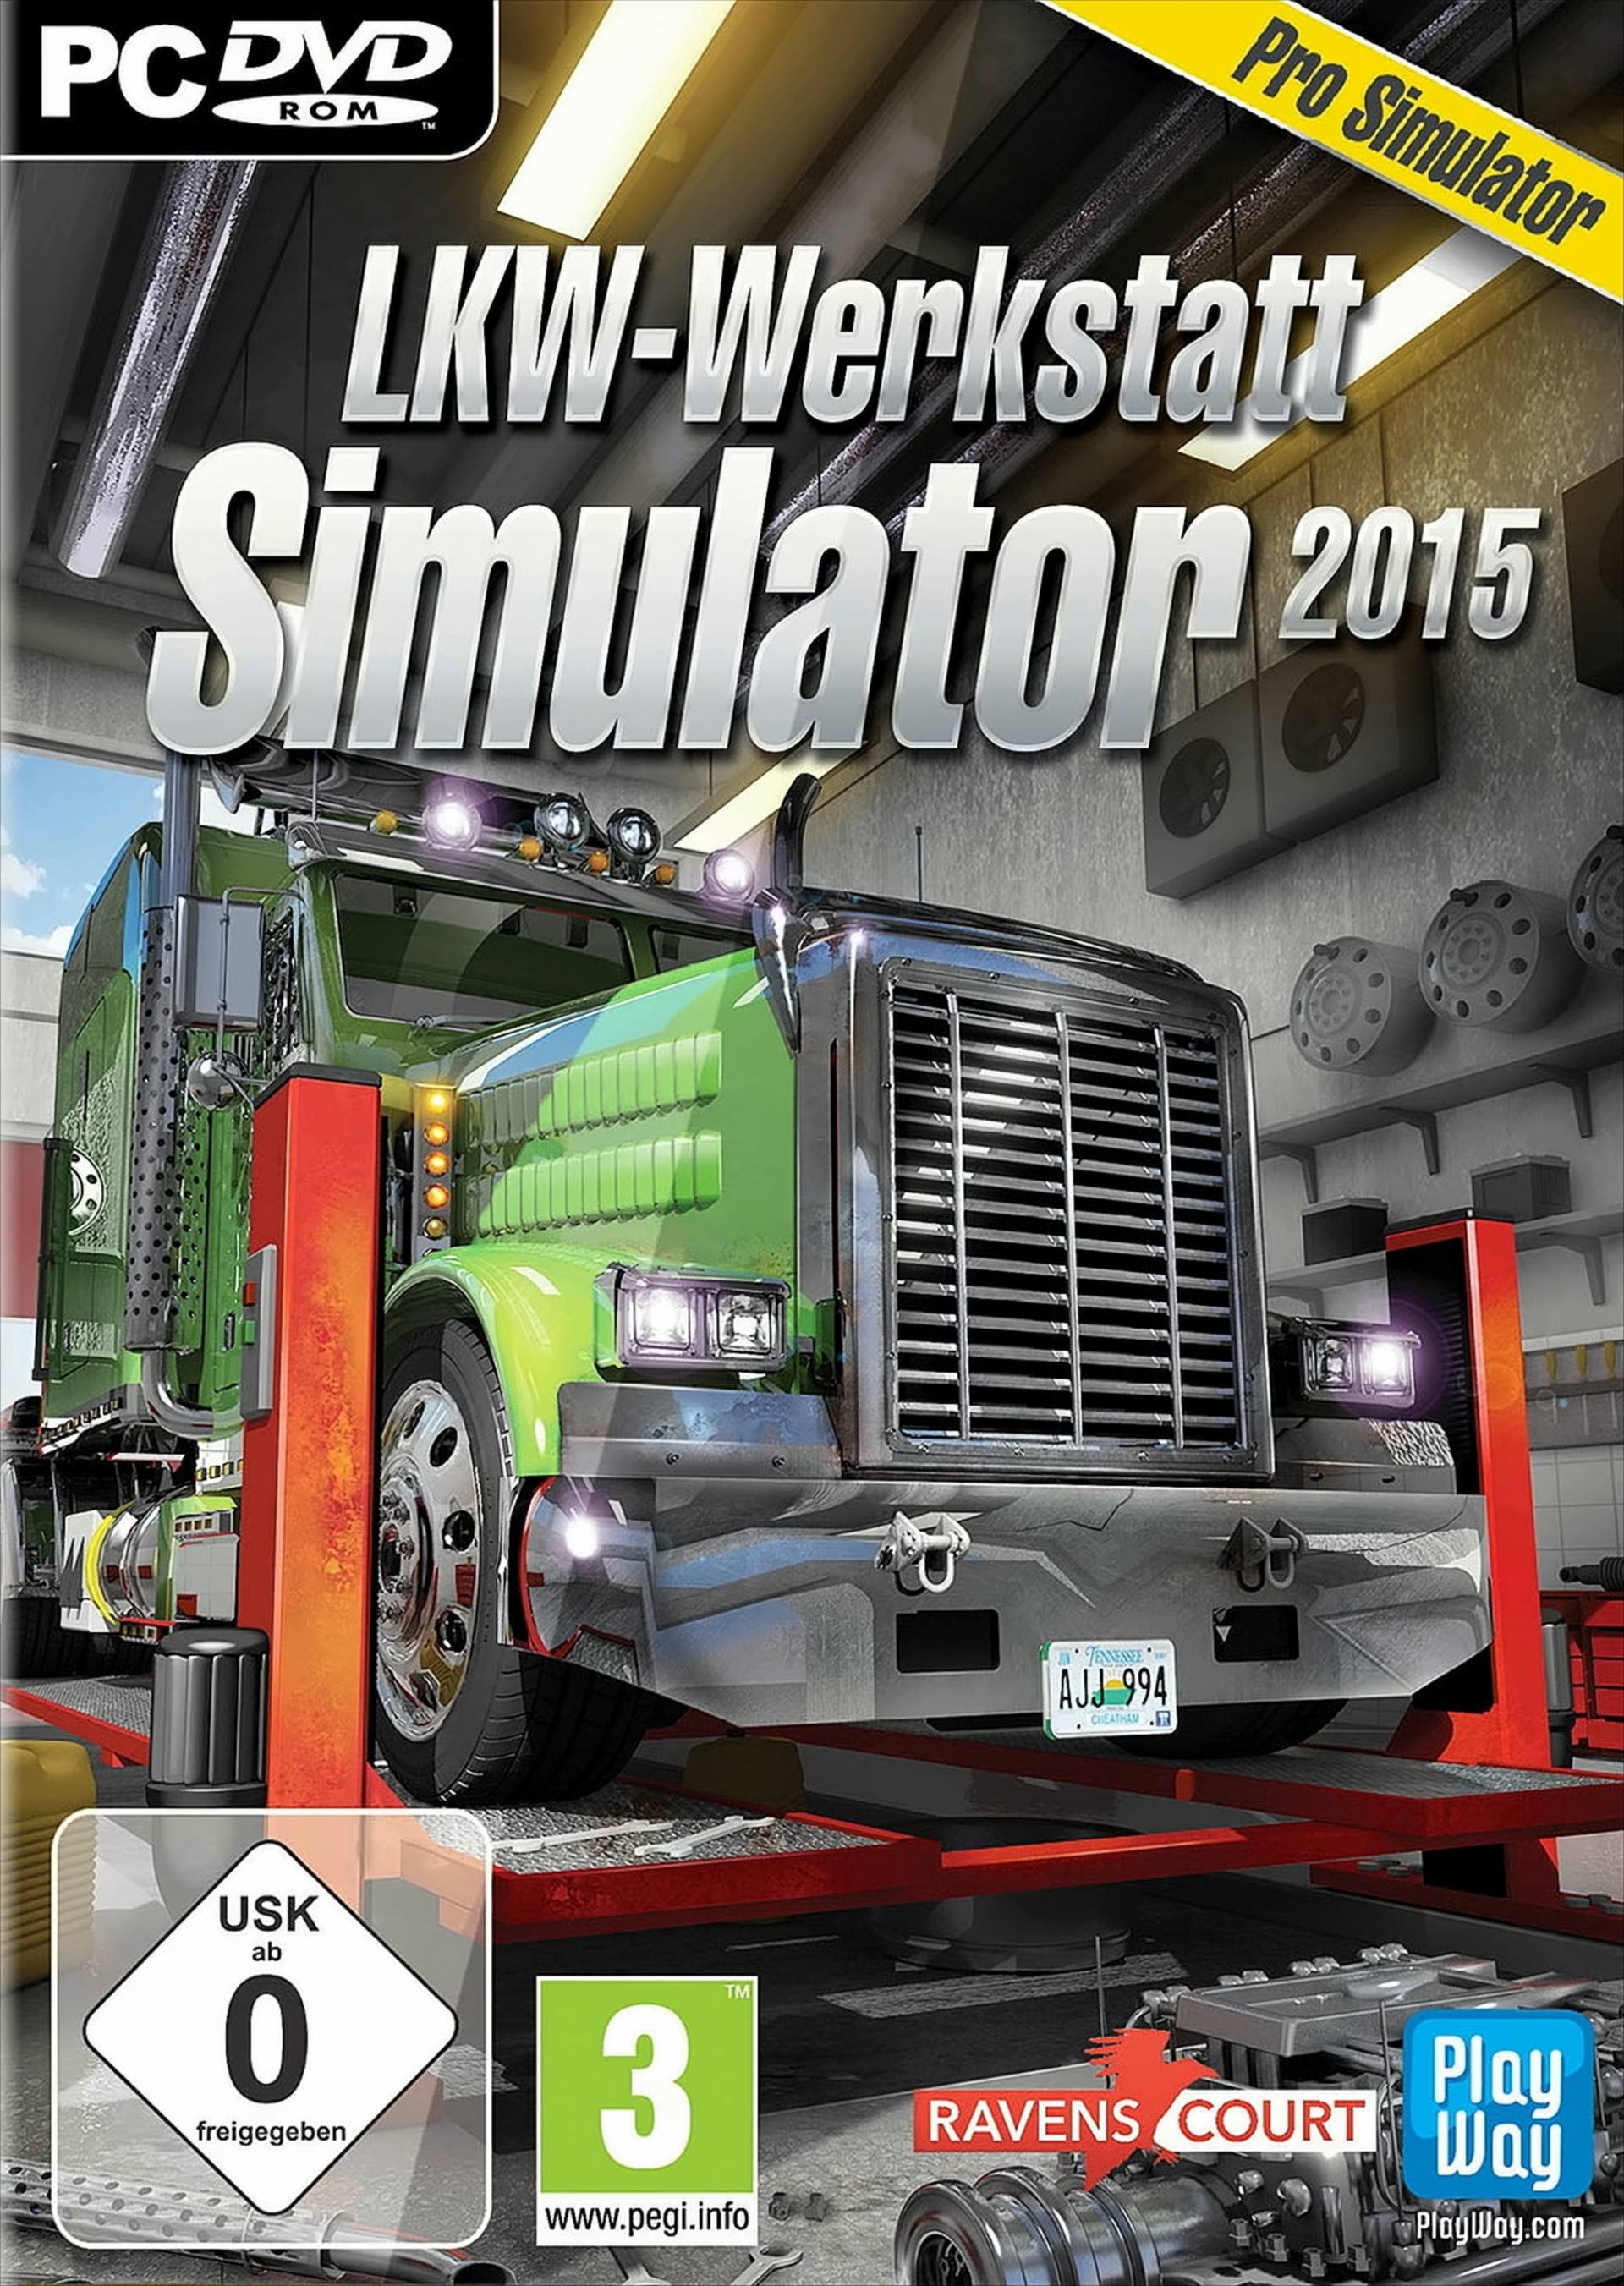 LKW-Werkstatt Simulator 2015 von Koch Media